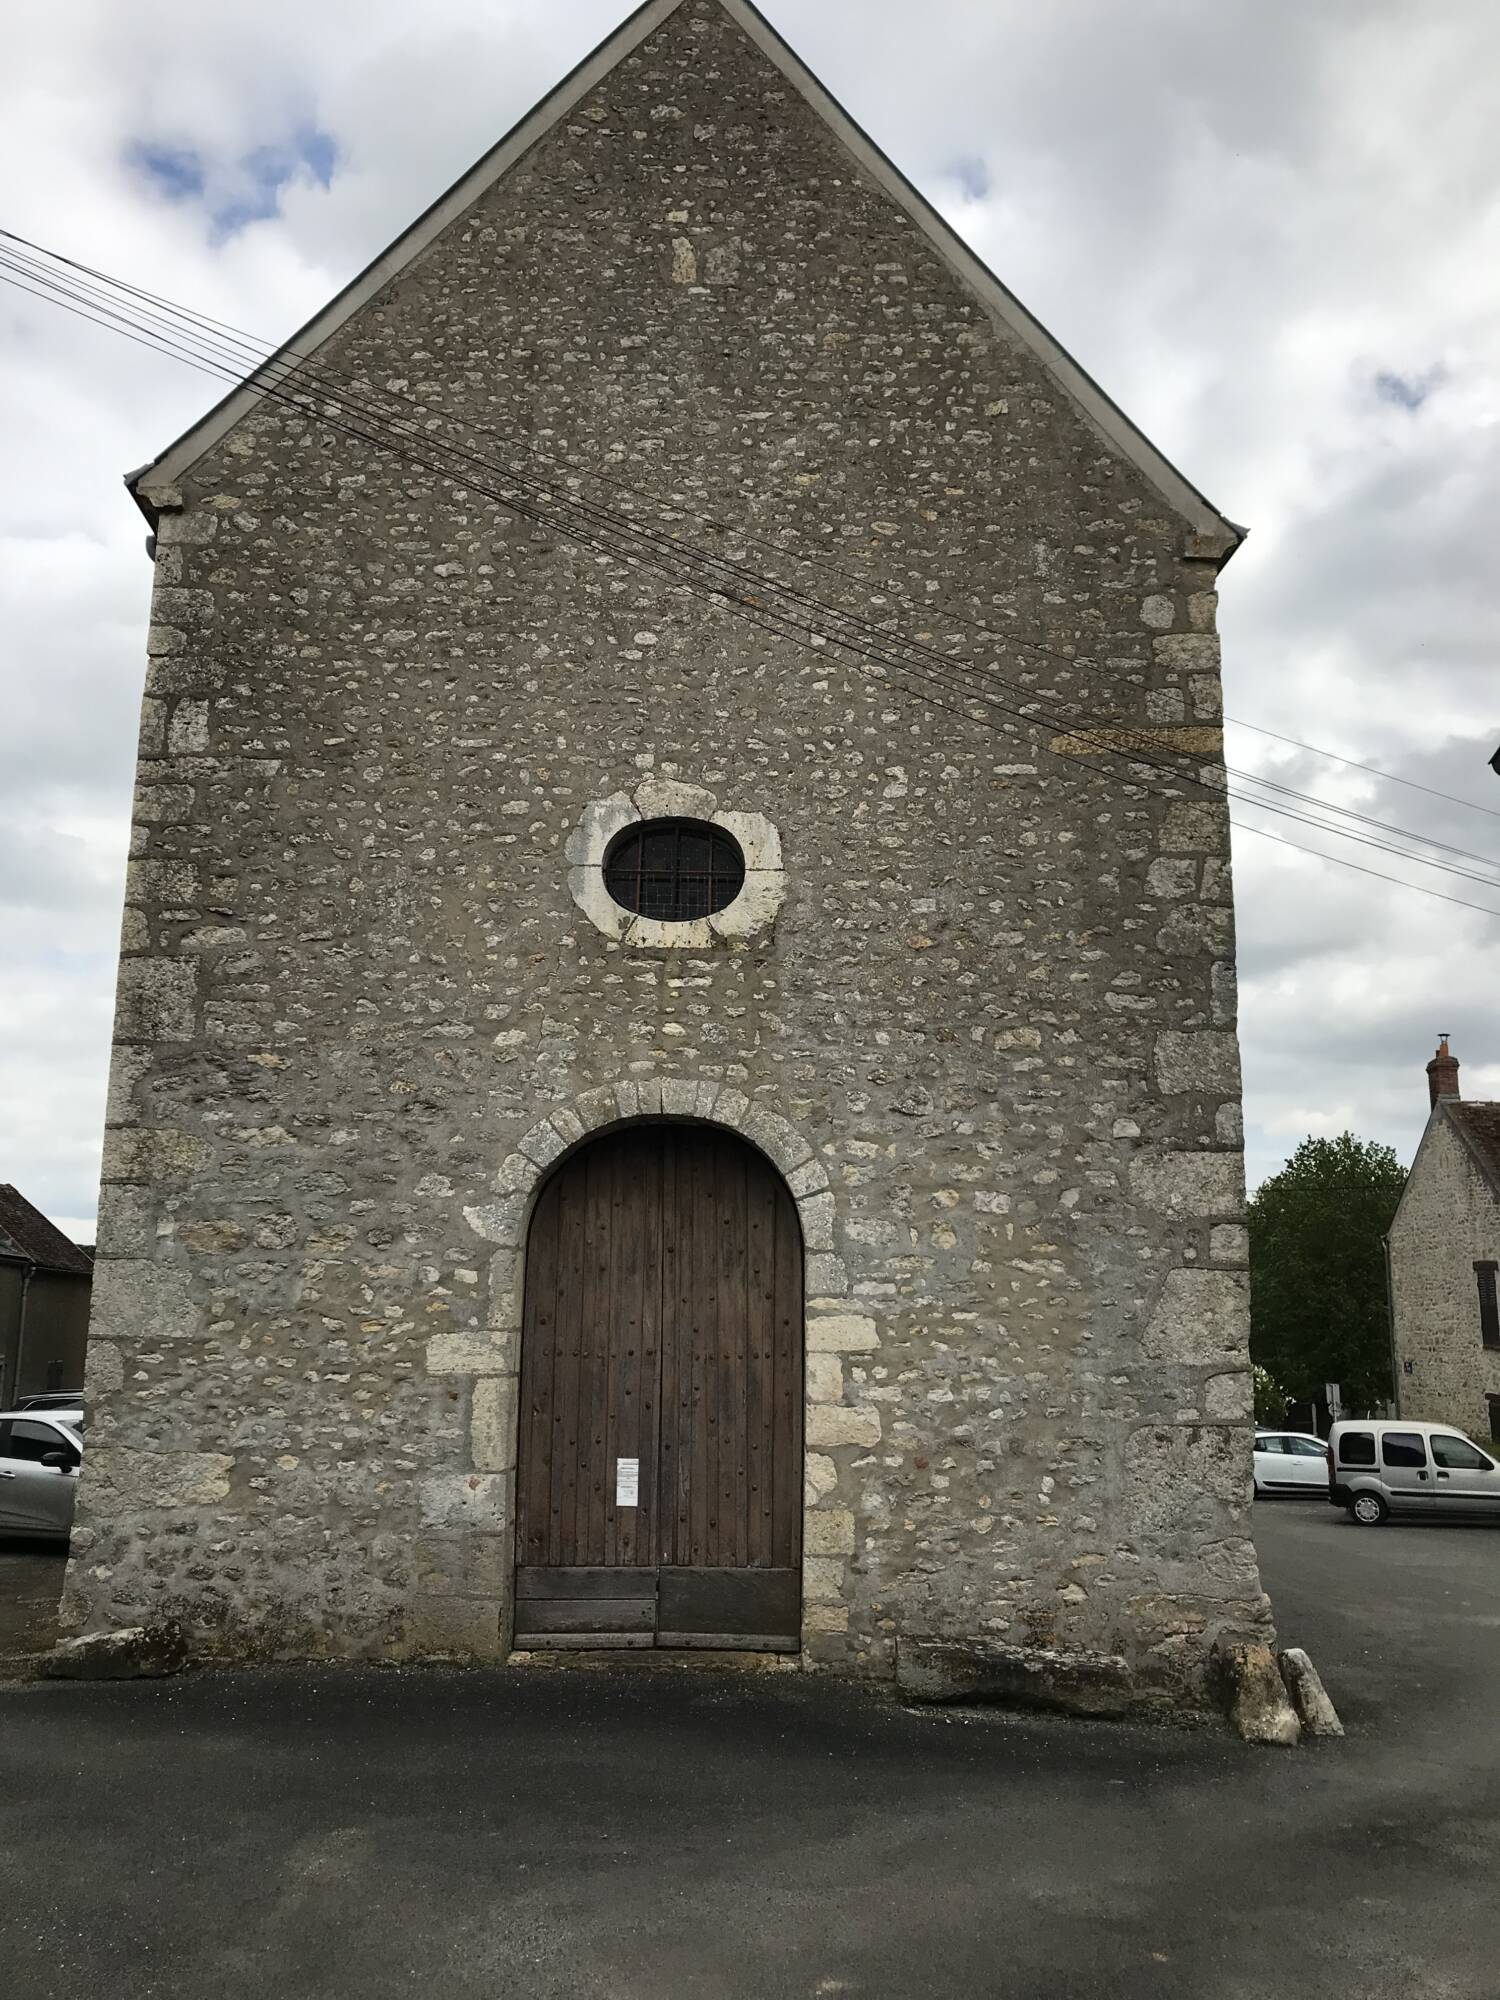 Briarres-sur-Essonne (45) - Église Saint-Étienne